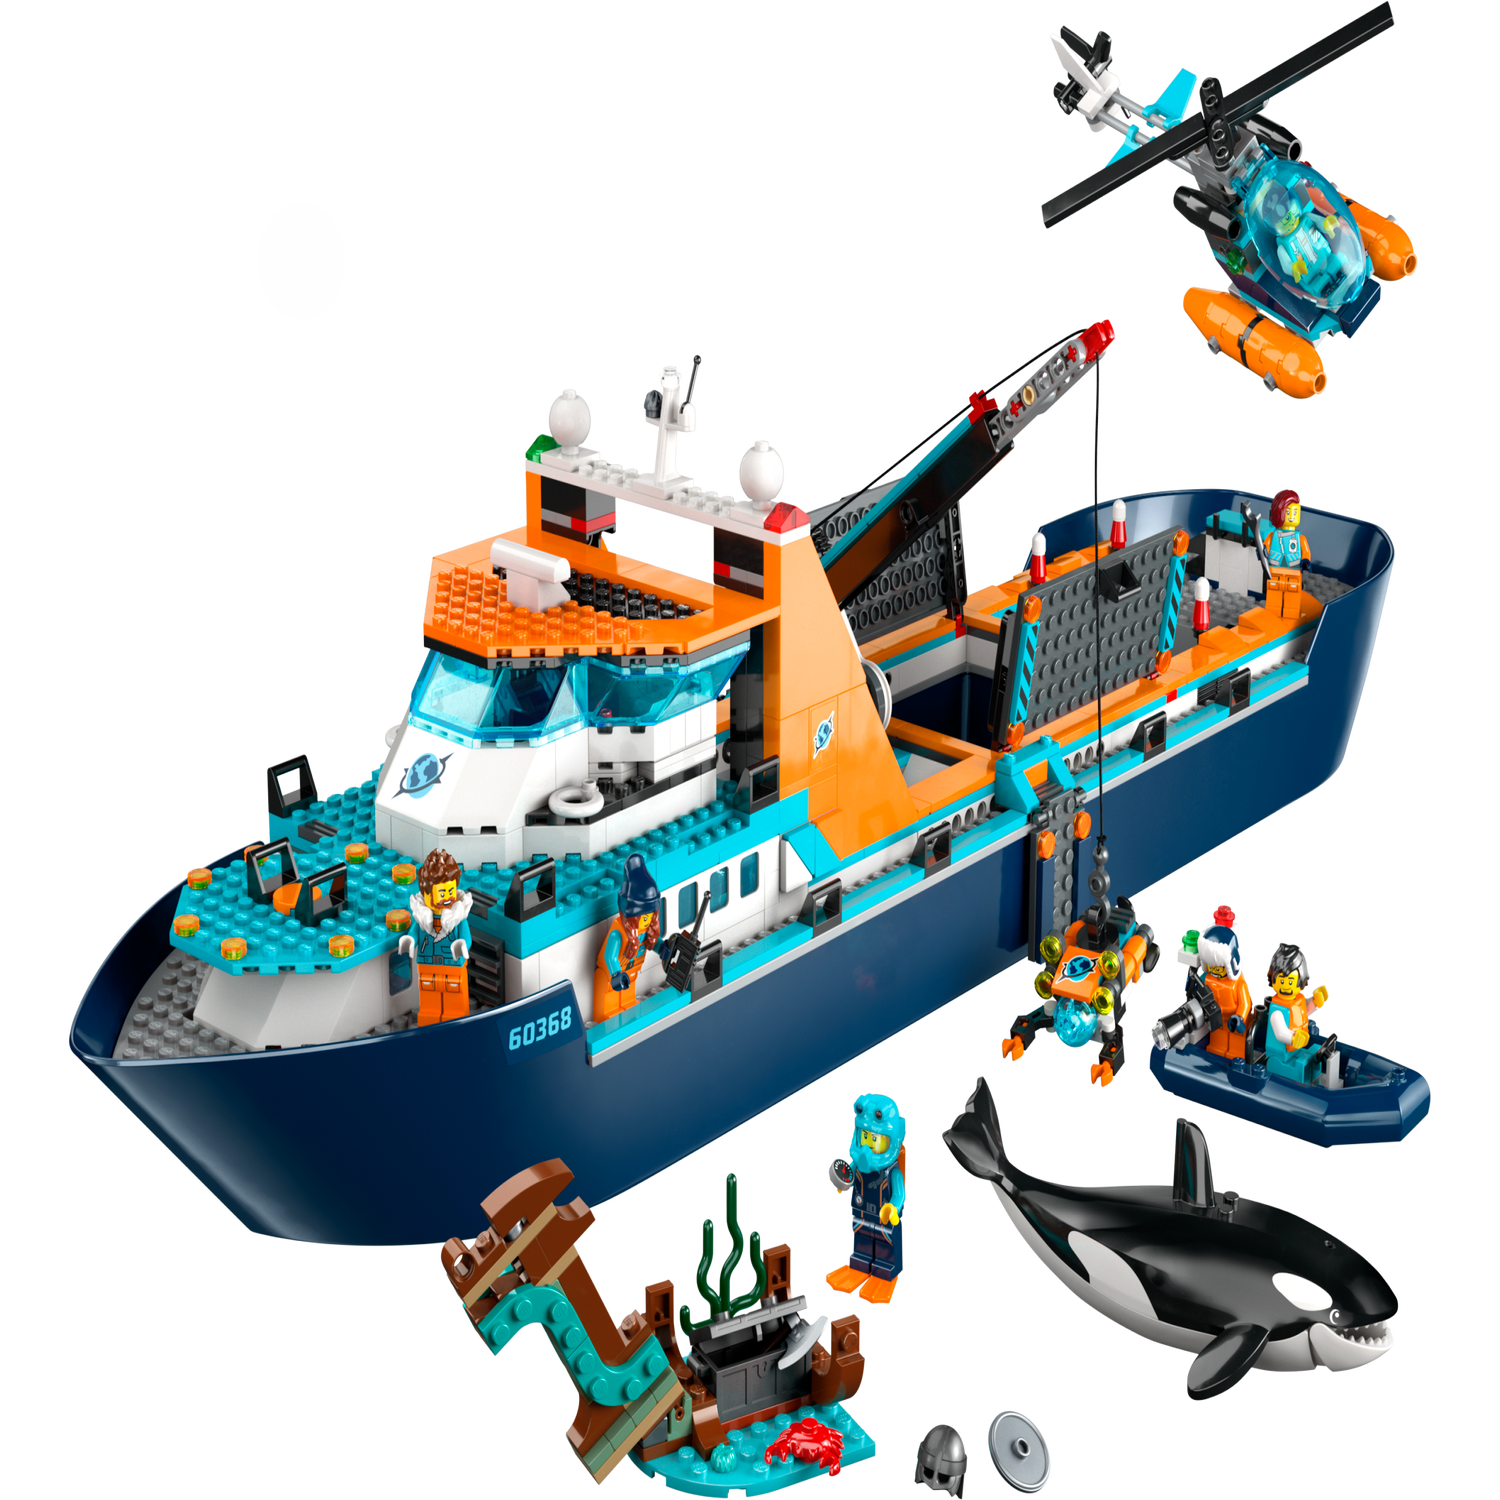 北極探検船 60368 | ボート |レゴ®ストア公式オンラインショップJPで購入